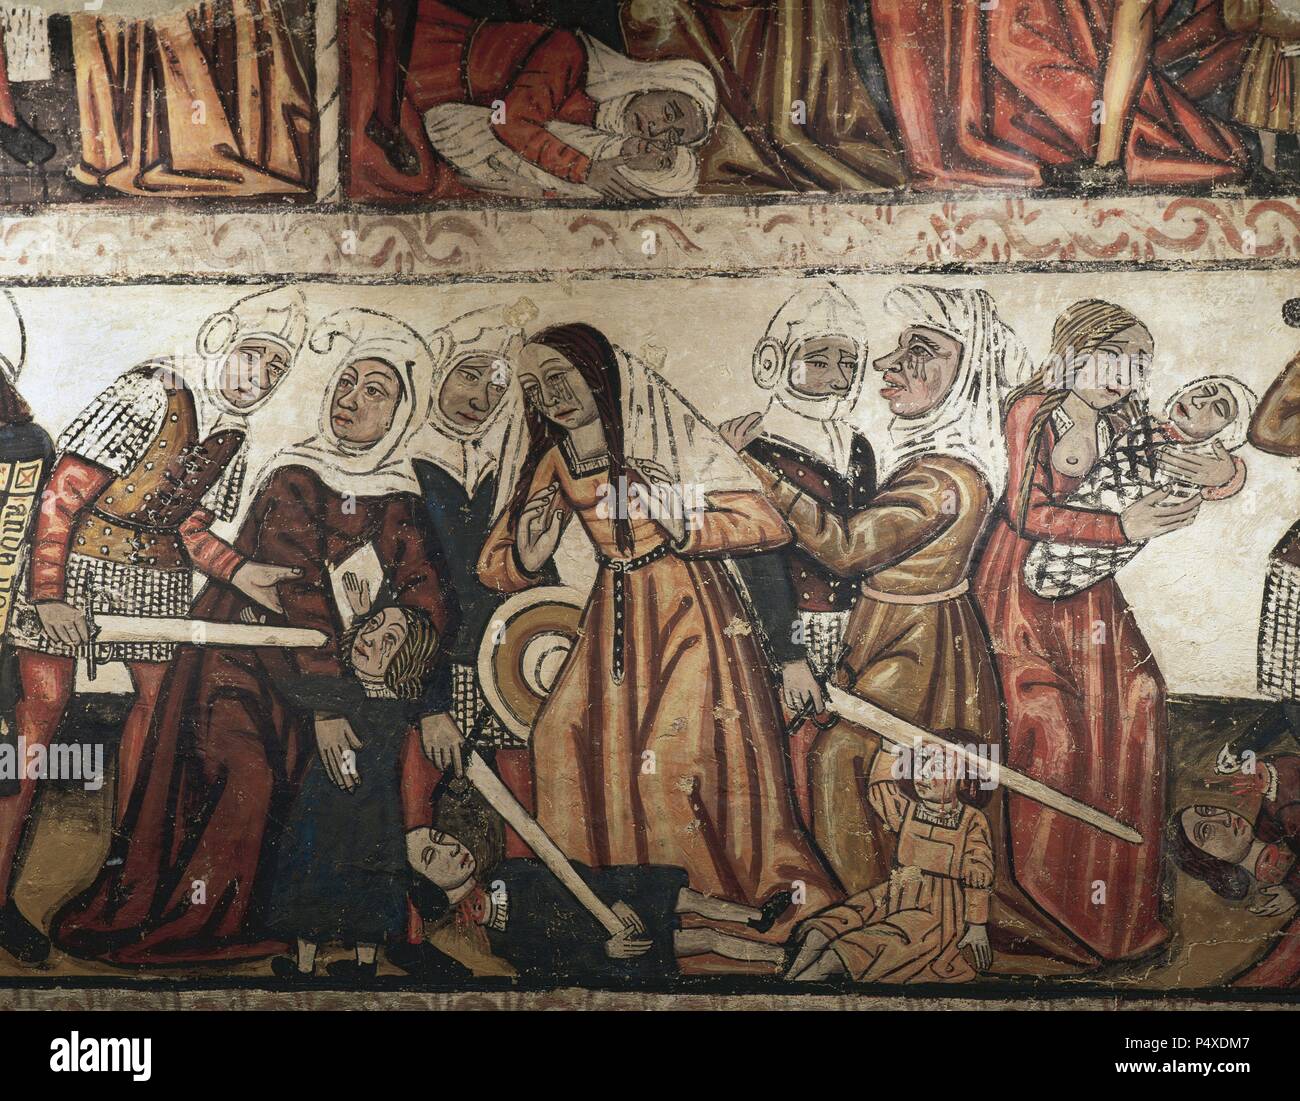 La strage degli innocenti. Pittura murale risalente al XIV secolo. Navata centrale del Duomo Mondonedo. Provincia di Lugo. La Galizia. Spagna. Foto Stock